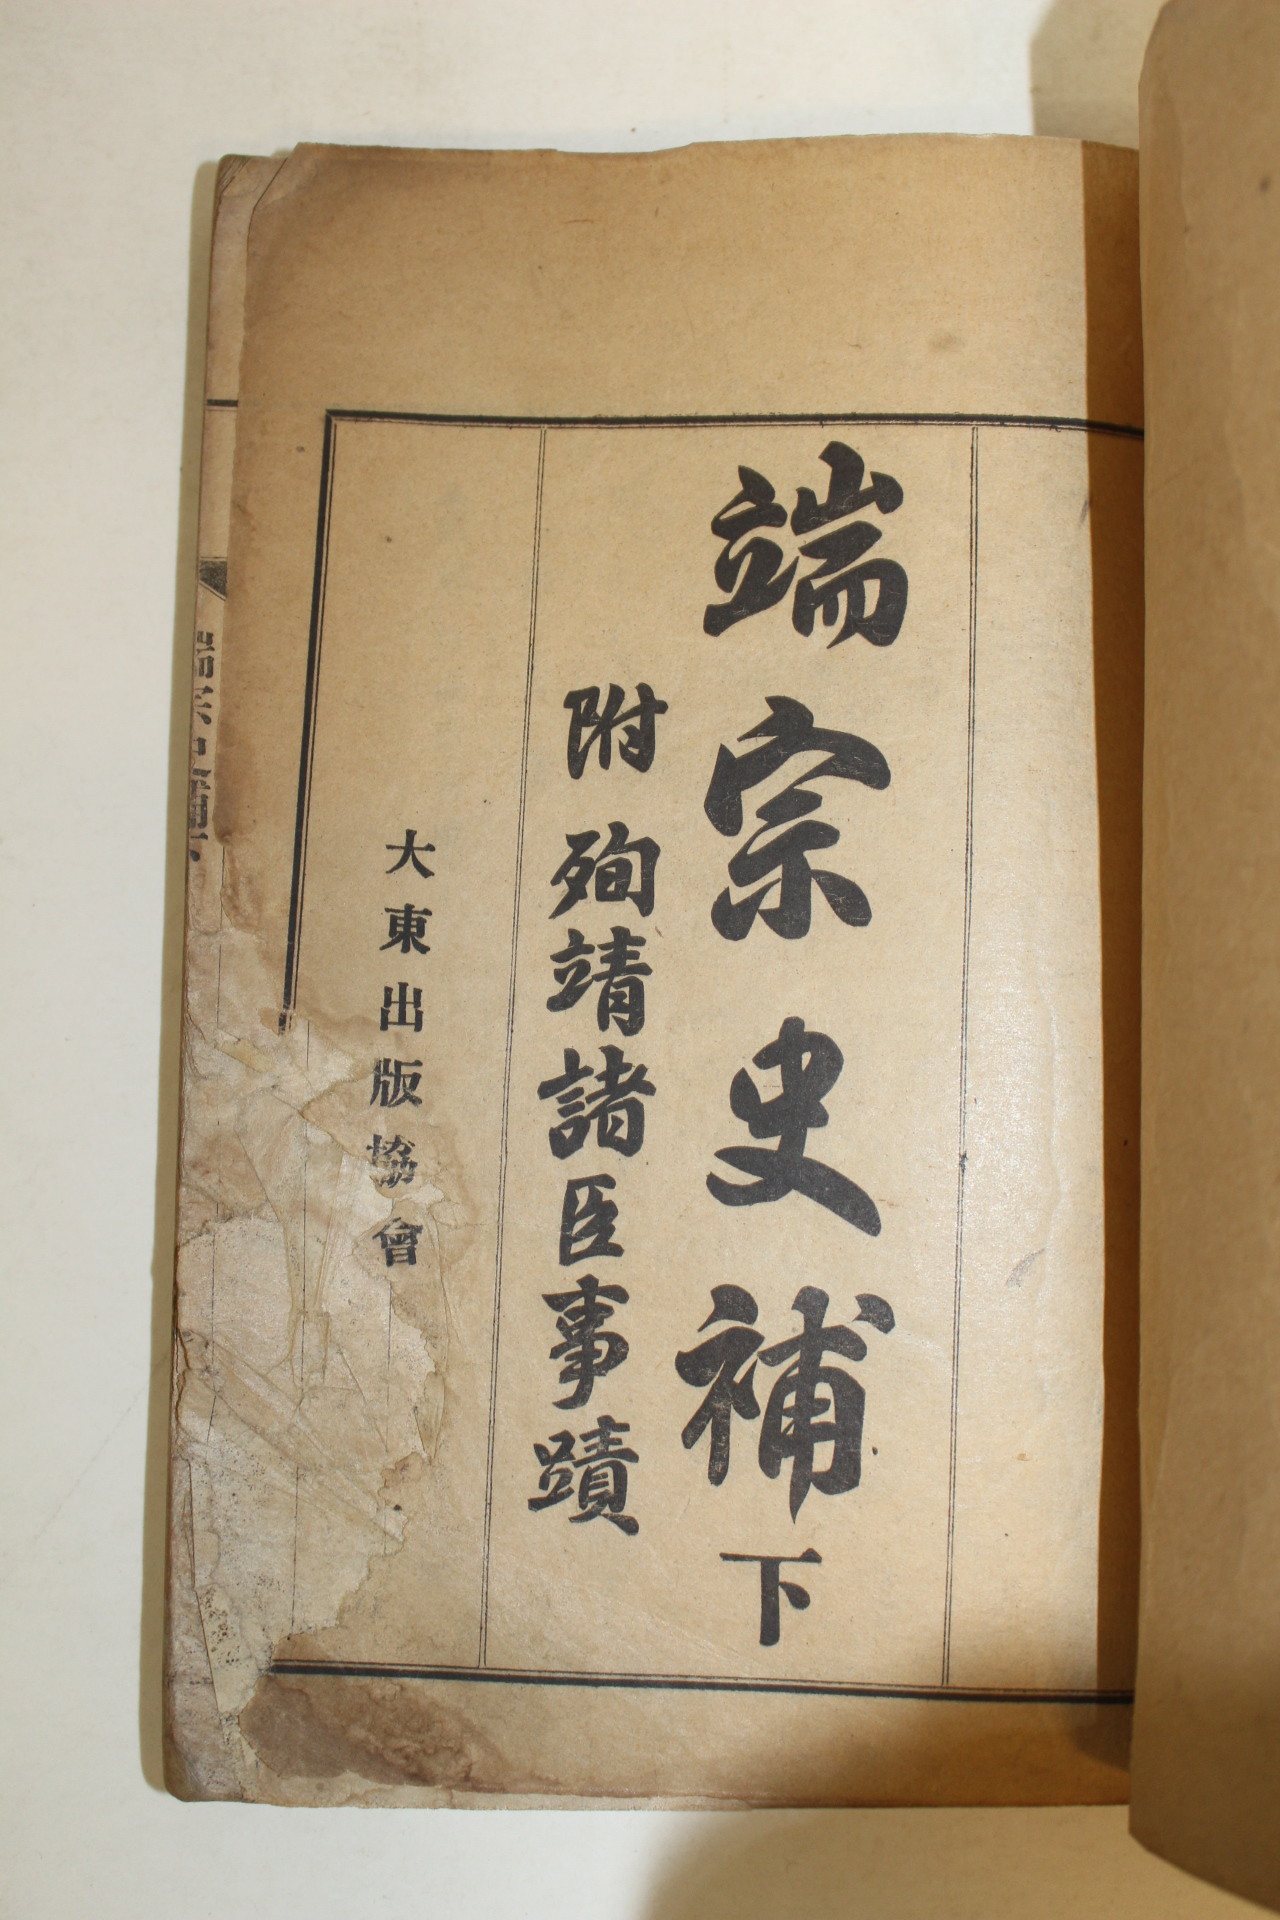 1930년 국한문혼용 단종사보(端宗史補) 하권 1책